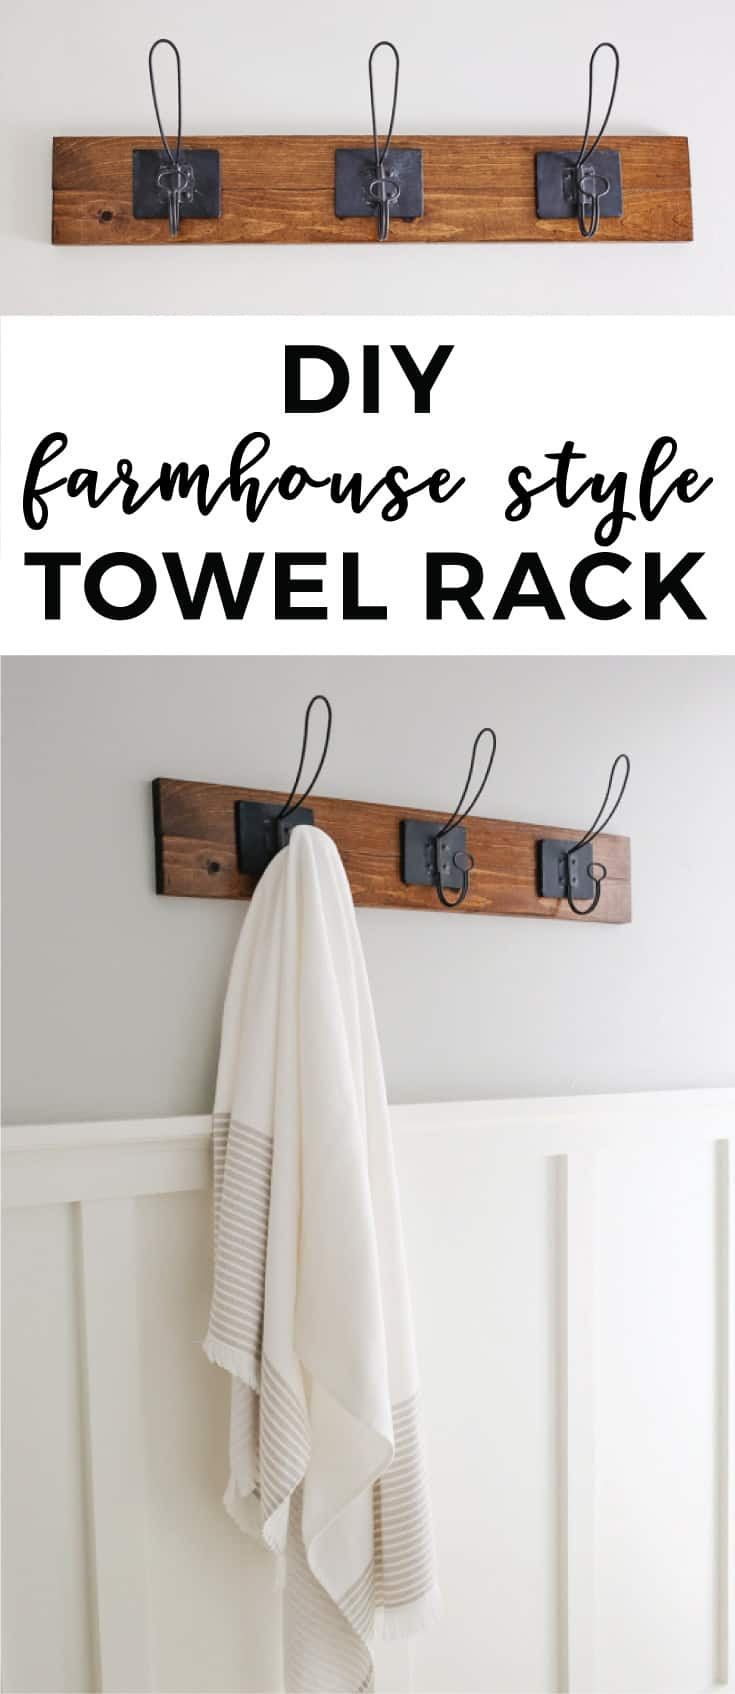 DIY Towel Rack
 Farmhouse Style DIY Towel Rack Angela Marie Made